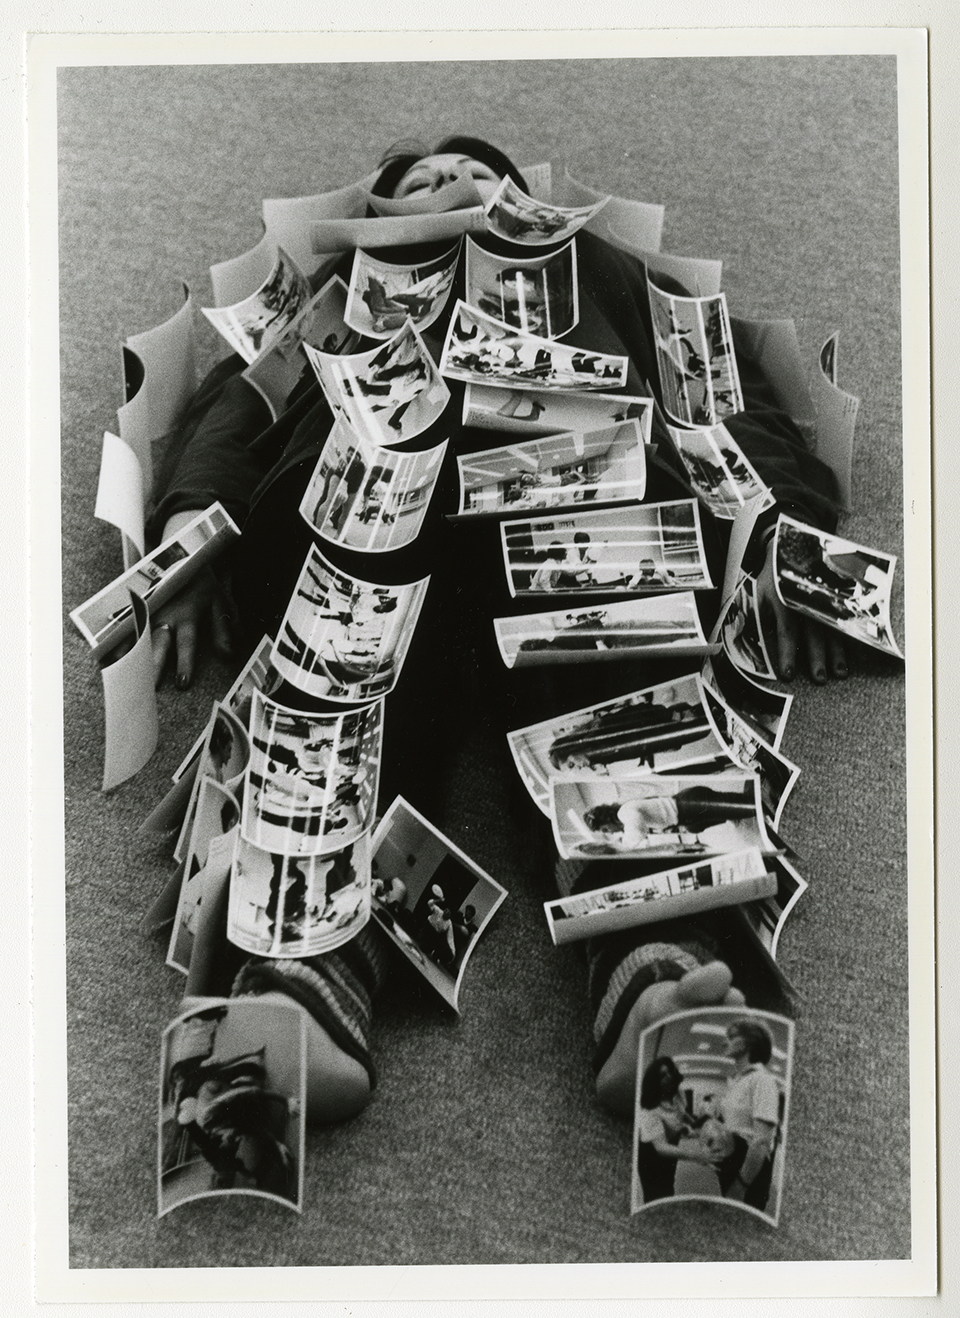 Media Drama, 1982. / Photographe inconnu. 1 photographie : épreuve n&b. Archives UdeM, P0419-E-3-D0021-P0119